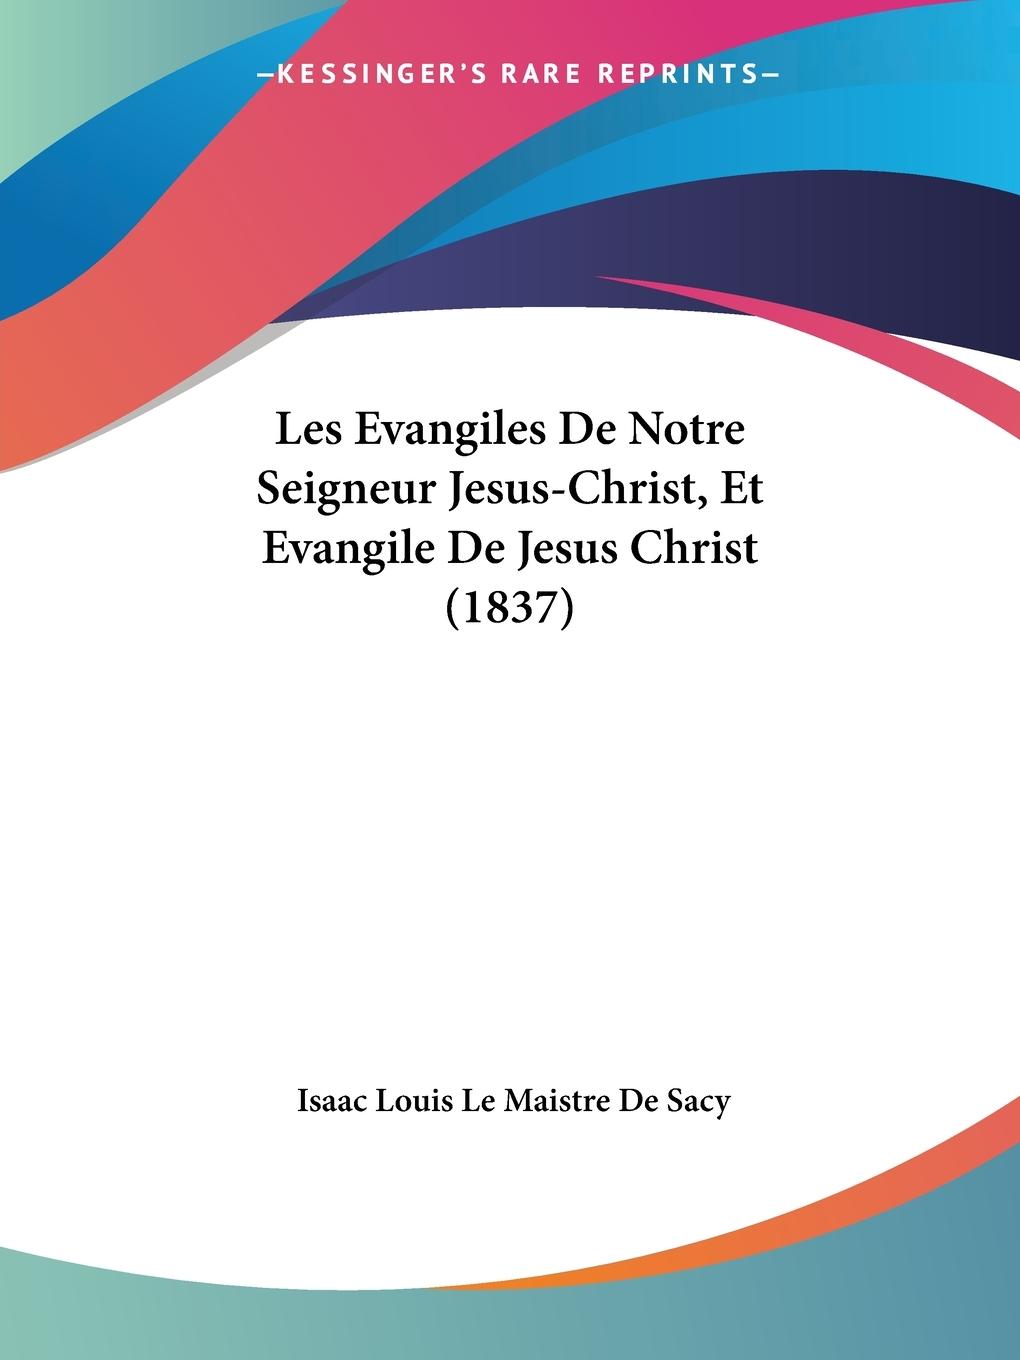 Les Evangiles De Notre Seigneur Jesus-Christ, Et Evangile De Jesus Christ (1837) - De Sacy, Isaac Louis Le Maistre